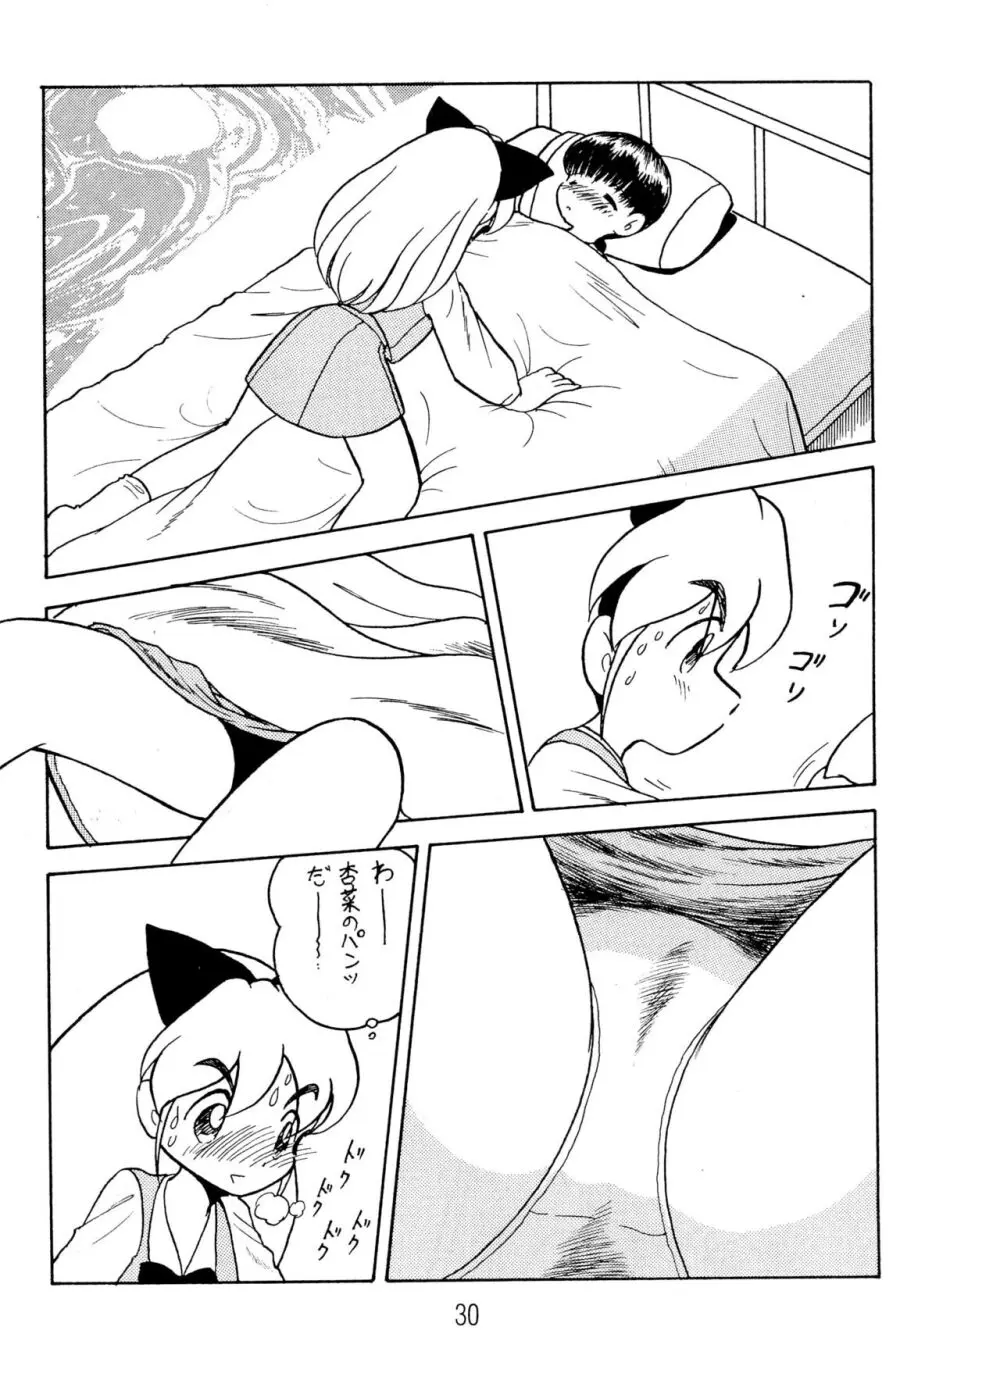 ANNA あ・ん・な・・・ - page30